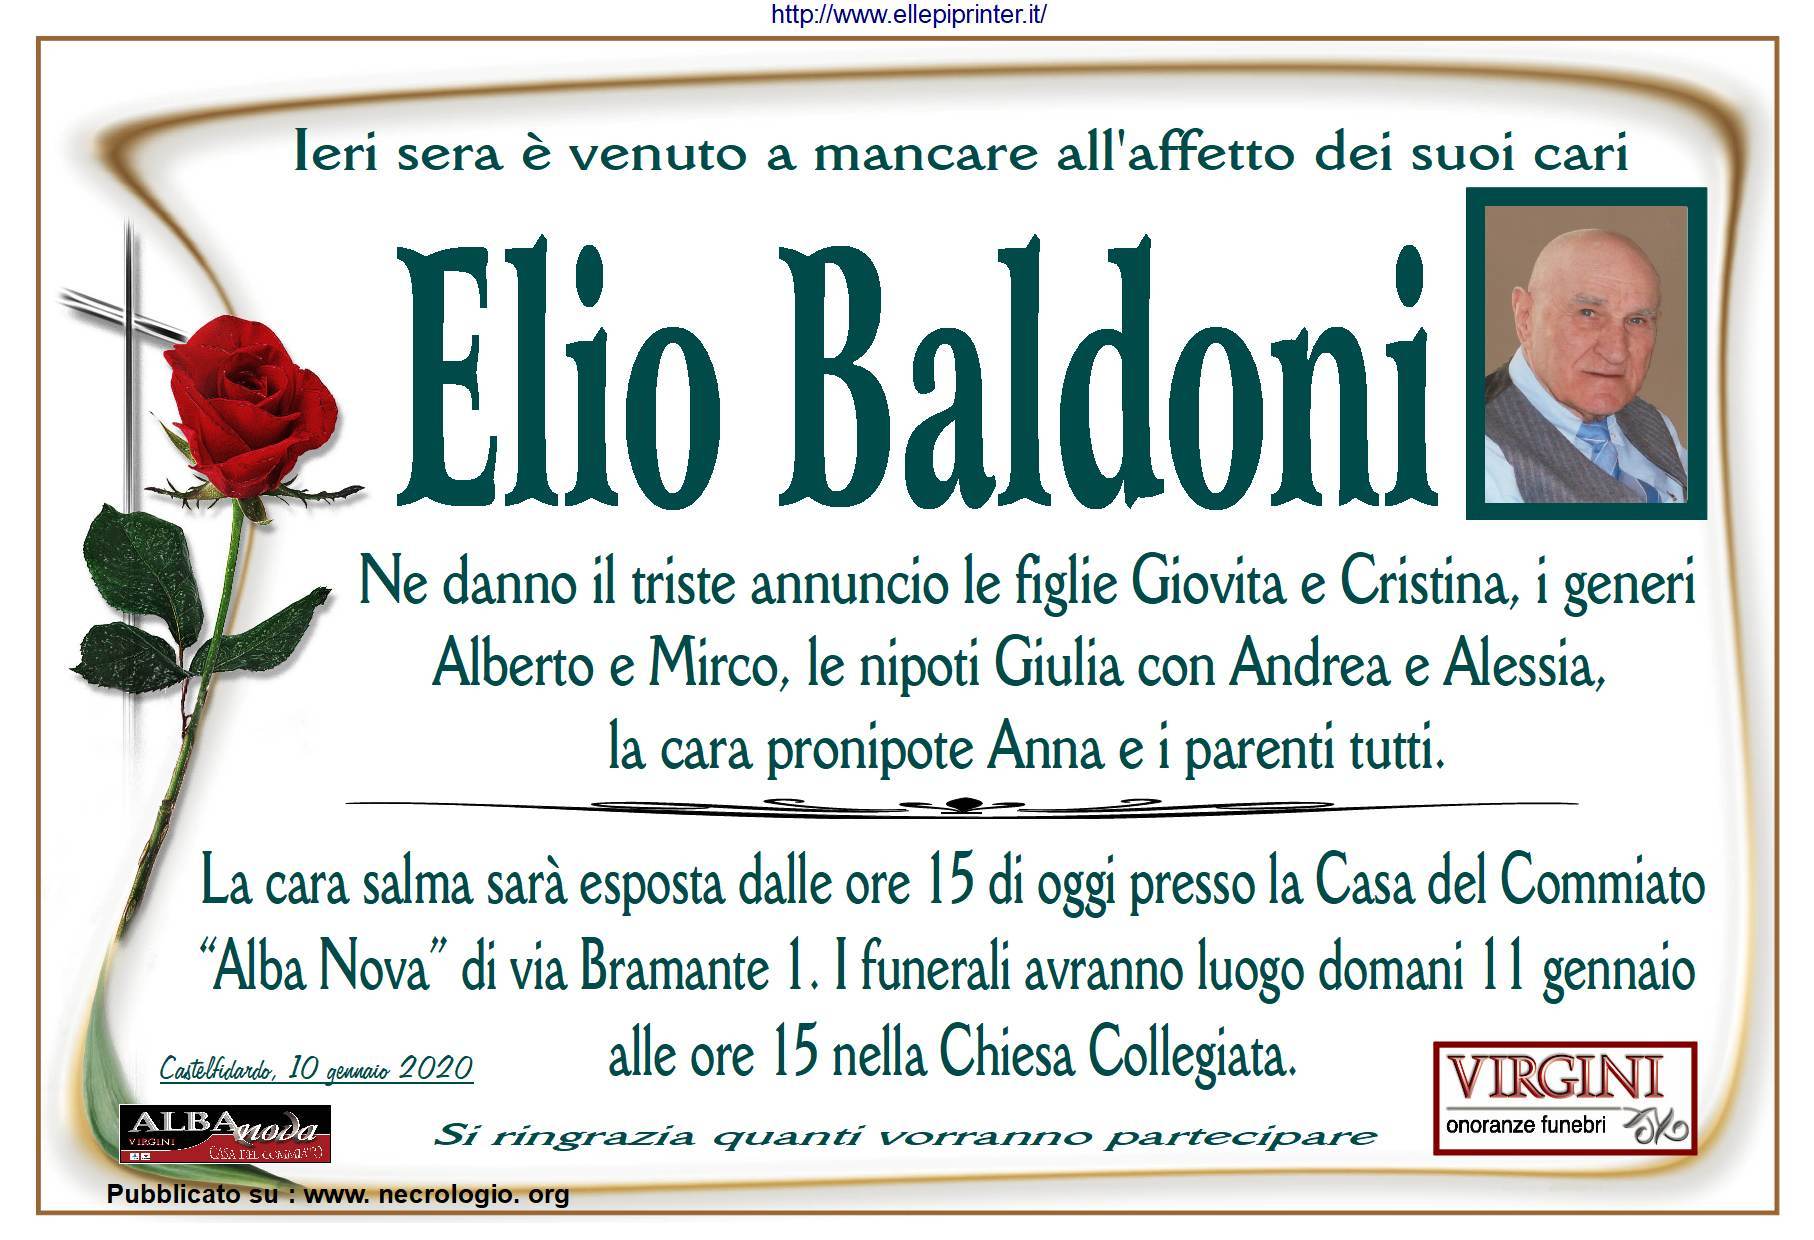 Elio Baldoni